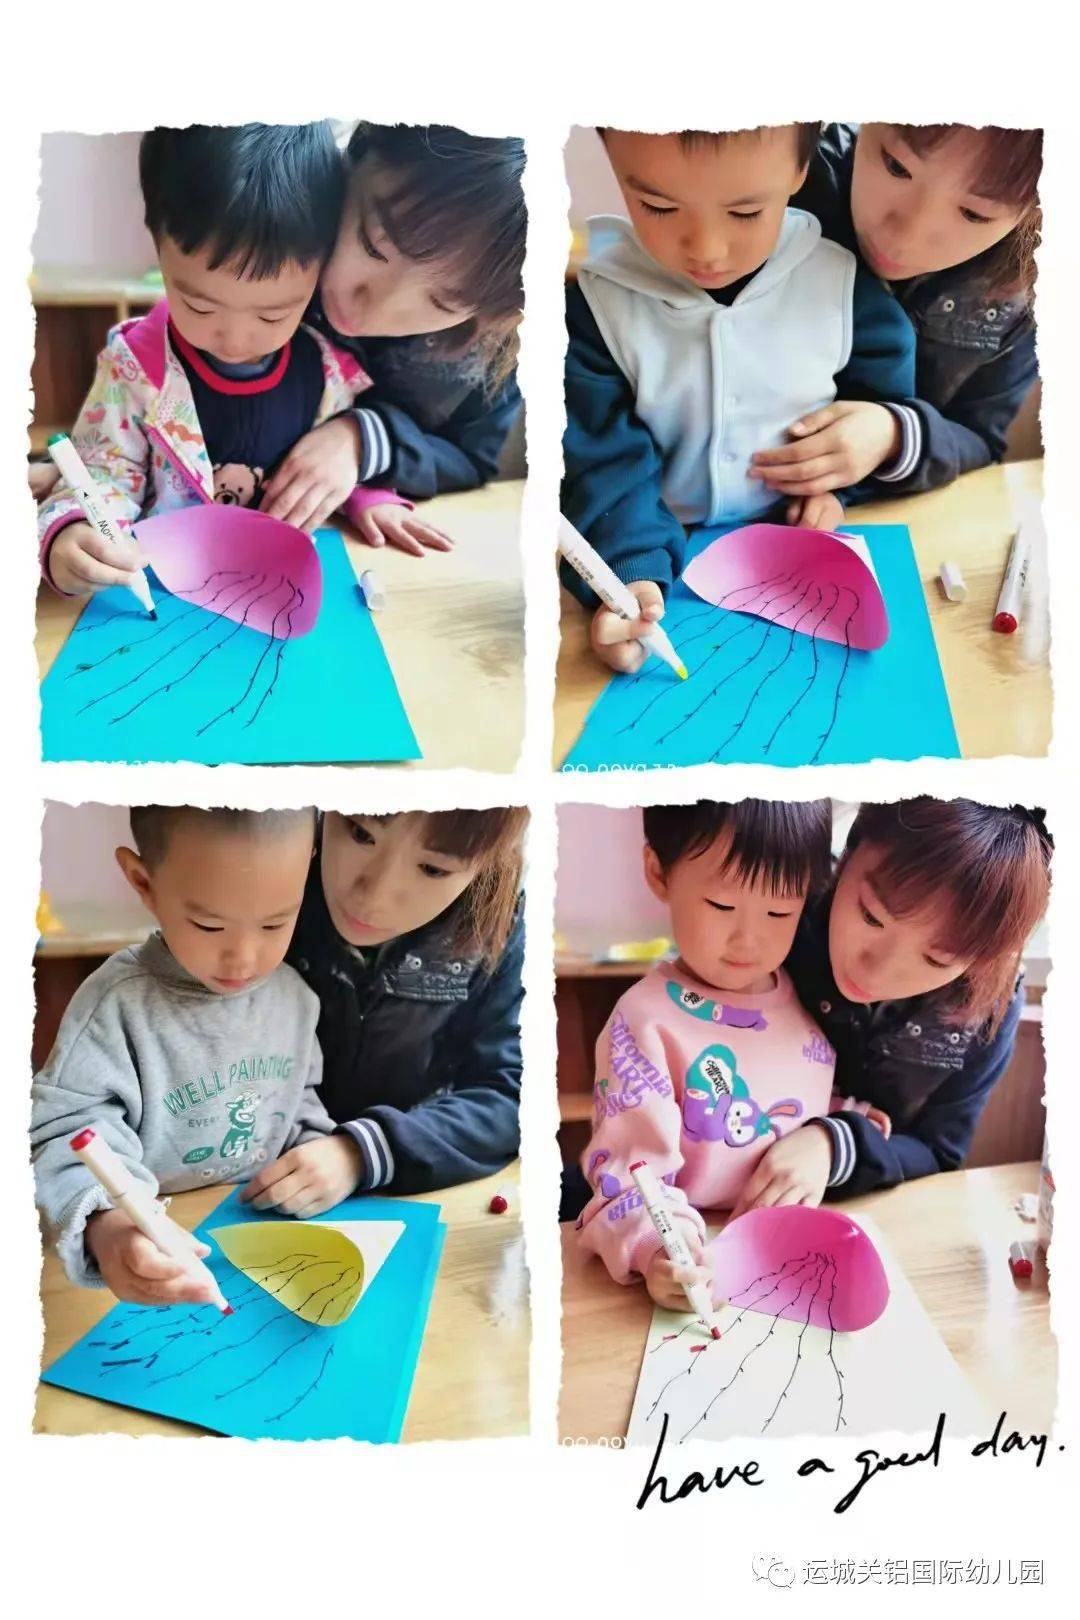 在重阳节到来之际,老师们组织宝贝们巧手做手工,用幼儿亲手制作的小